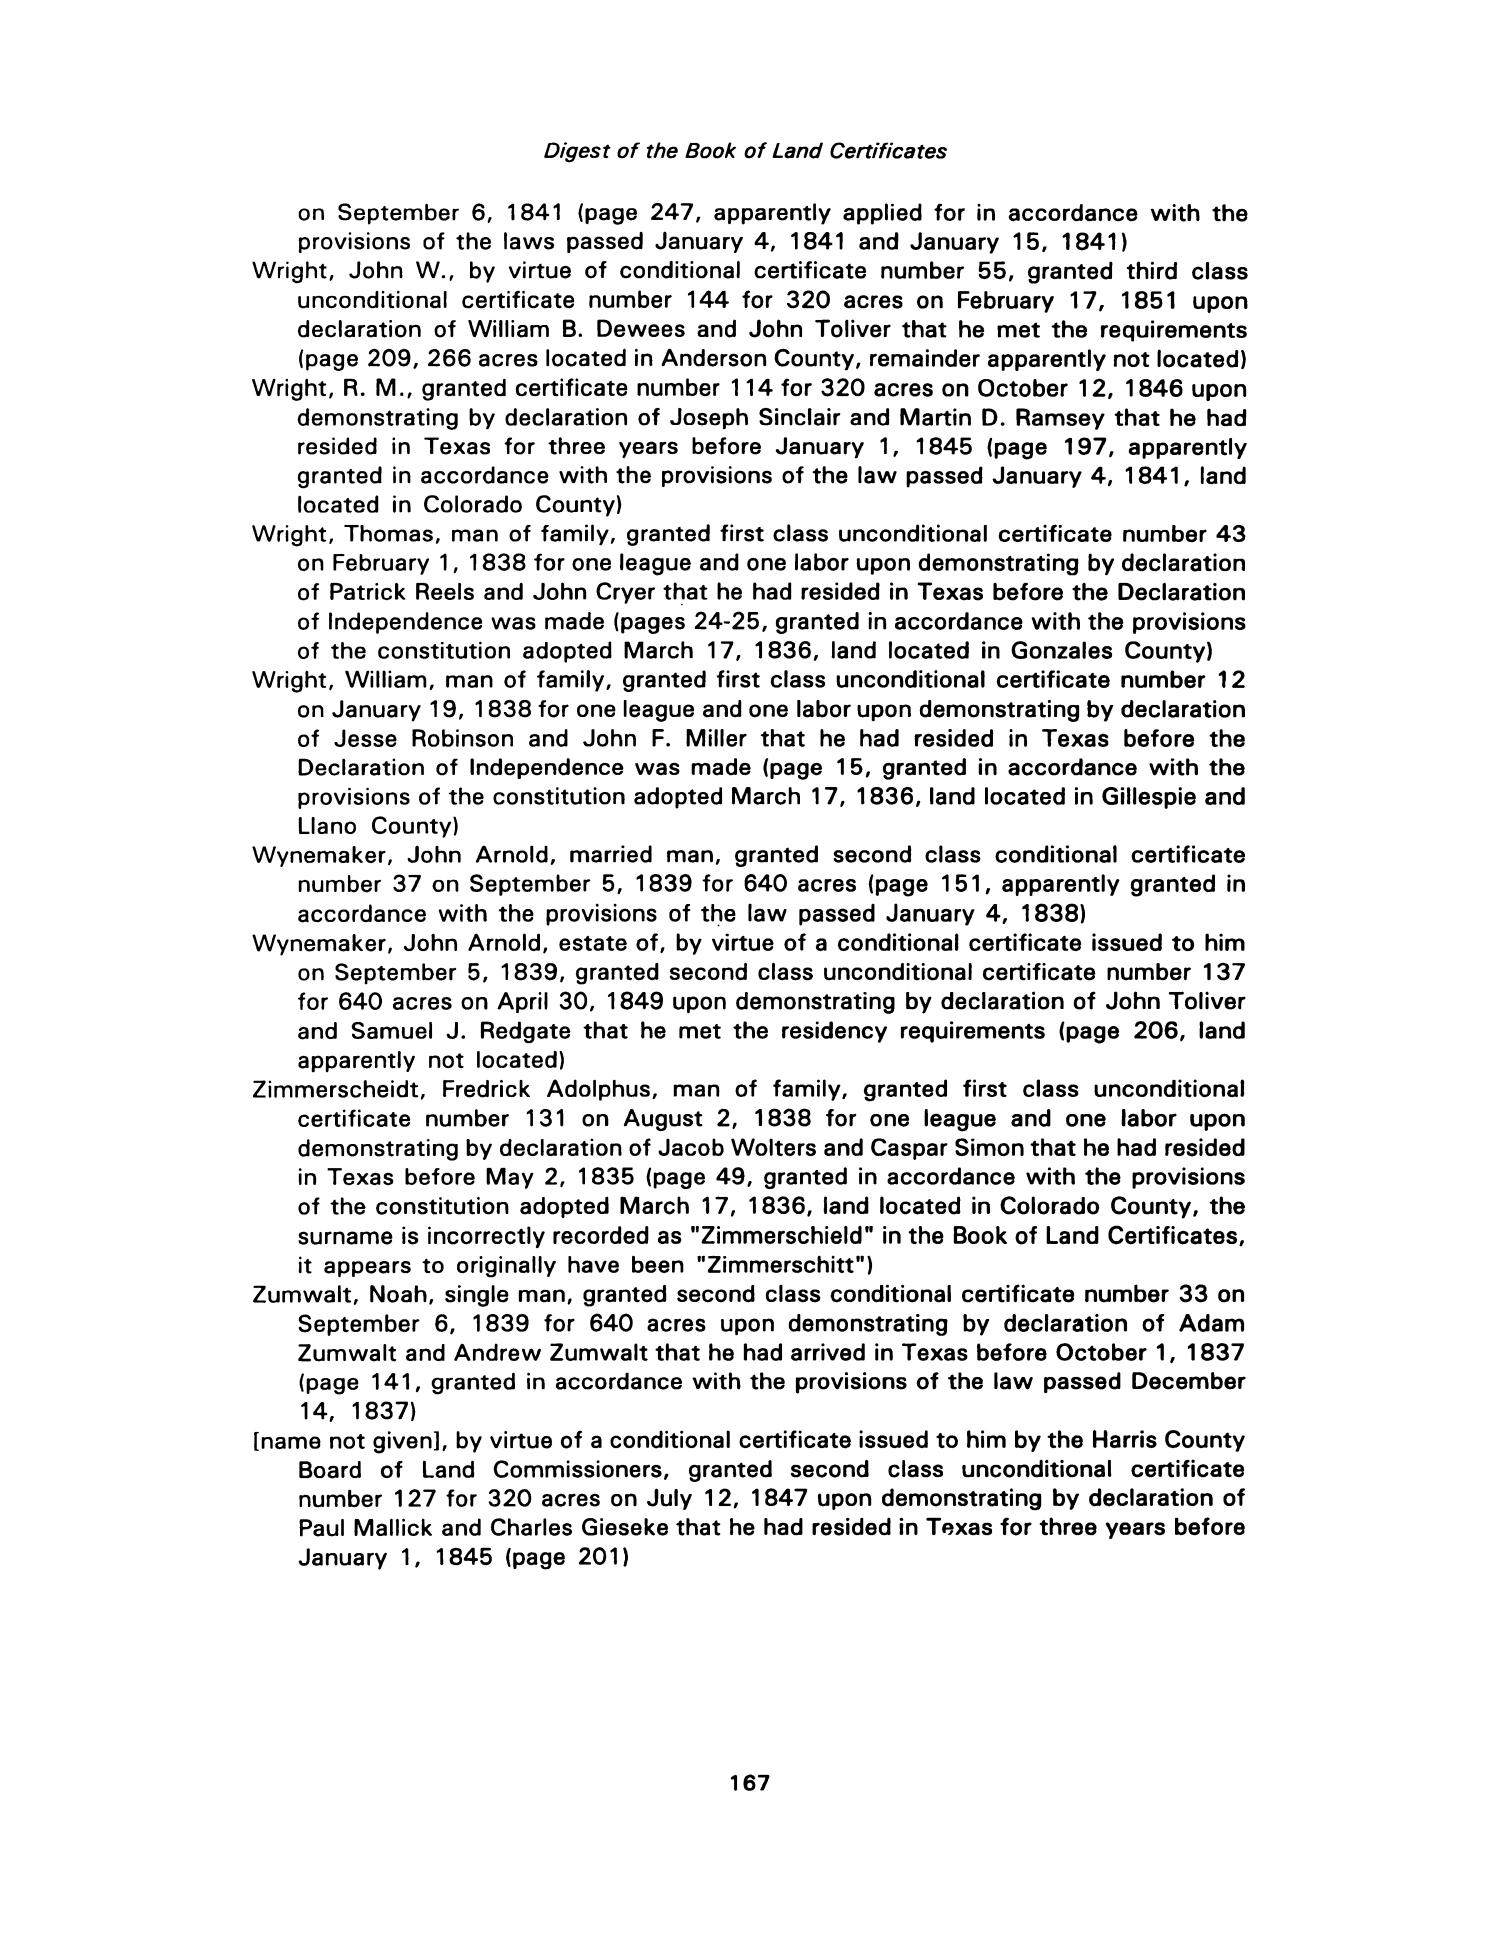 Nesbitt Memorial Library Journal, Volume 3, Number 3, September 1993
                                                
                                                    167
                                                